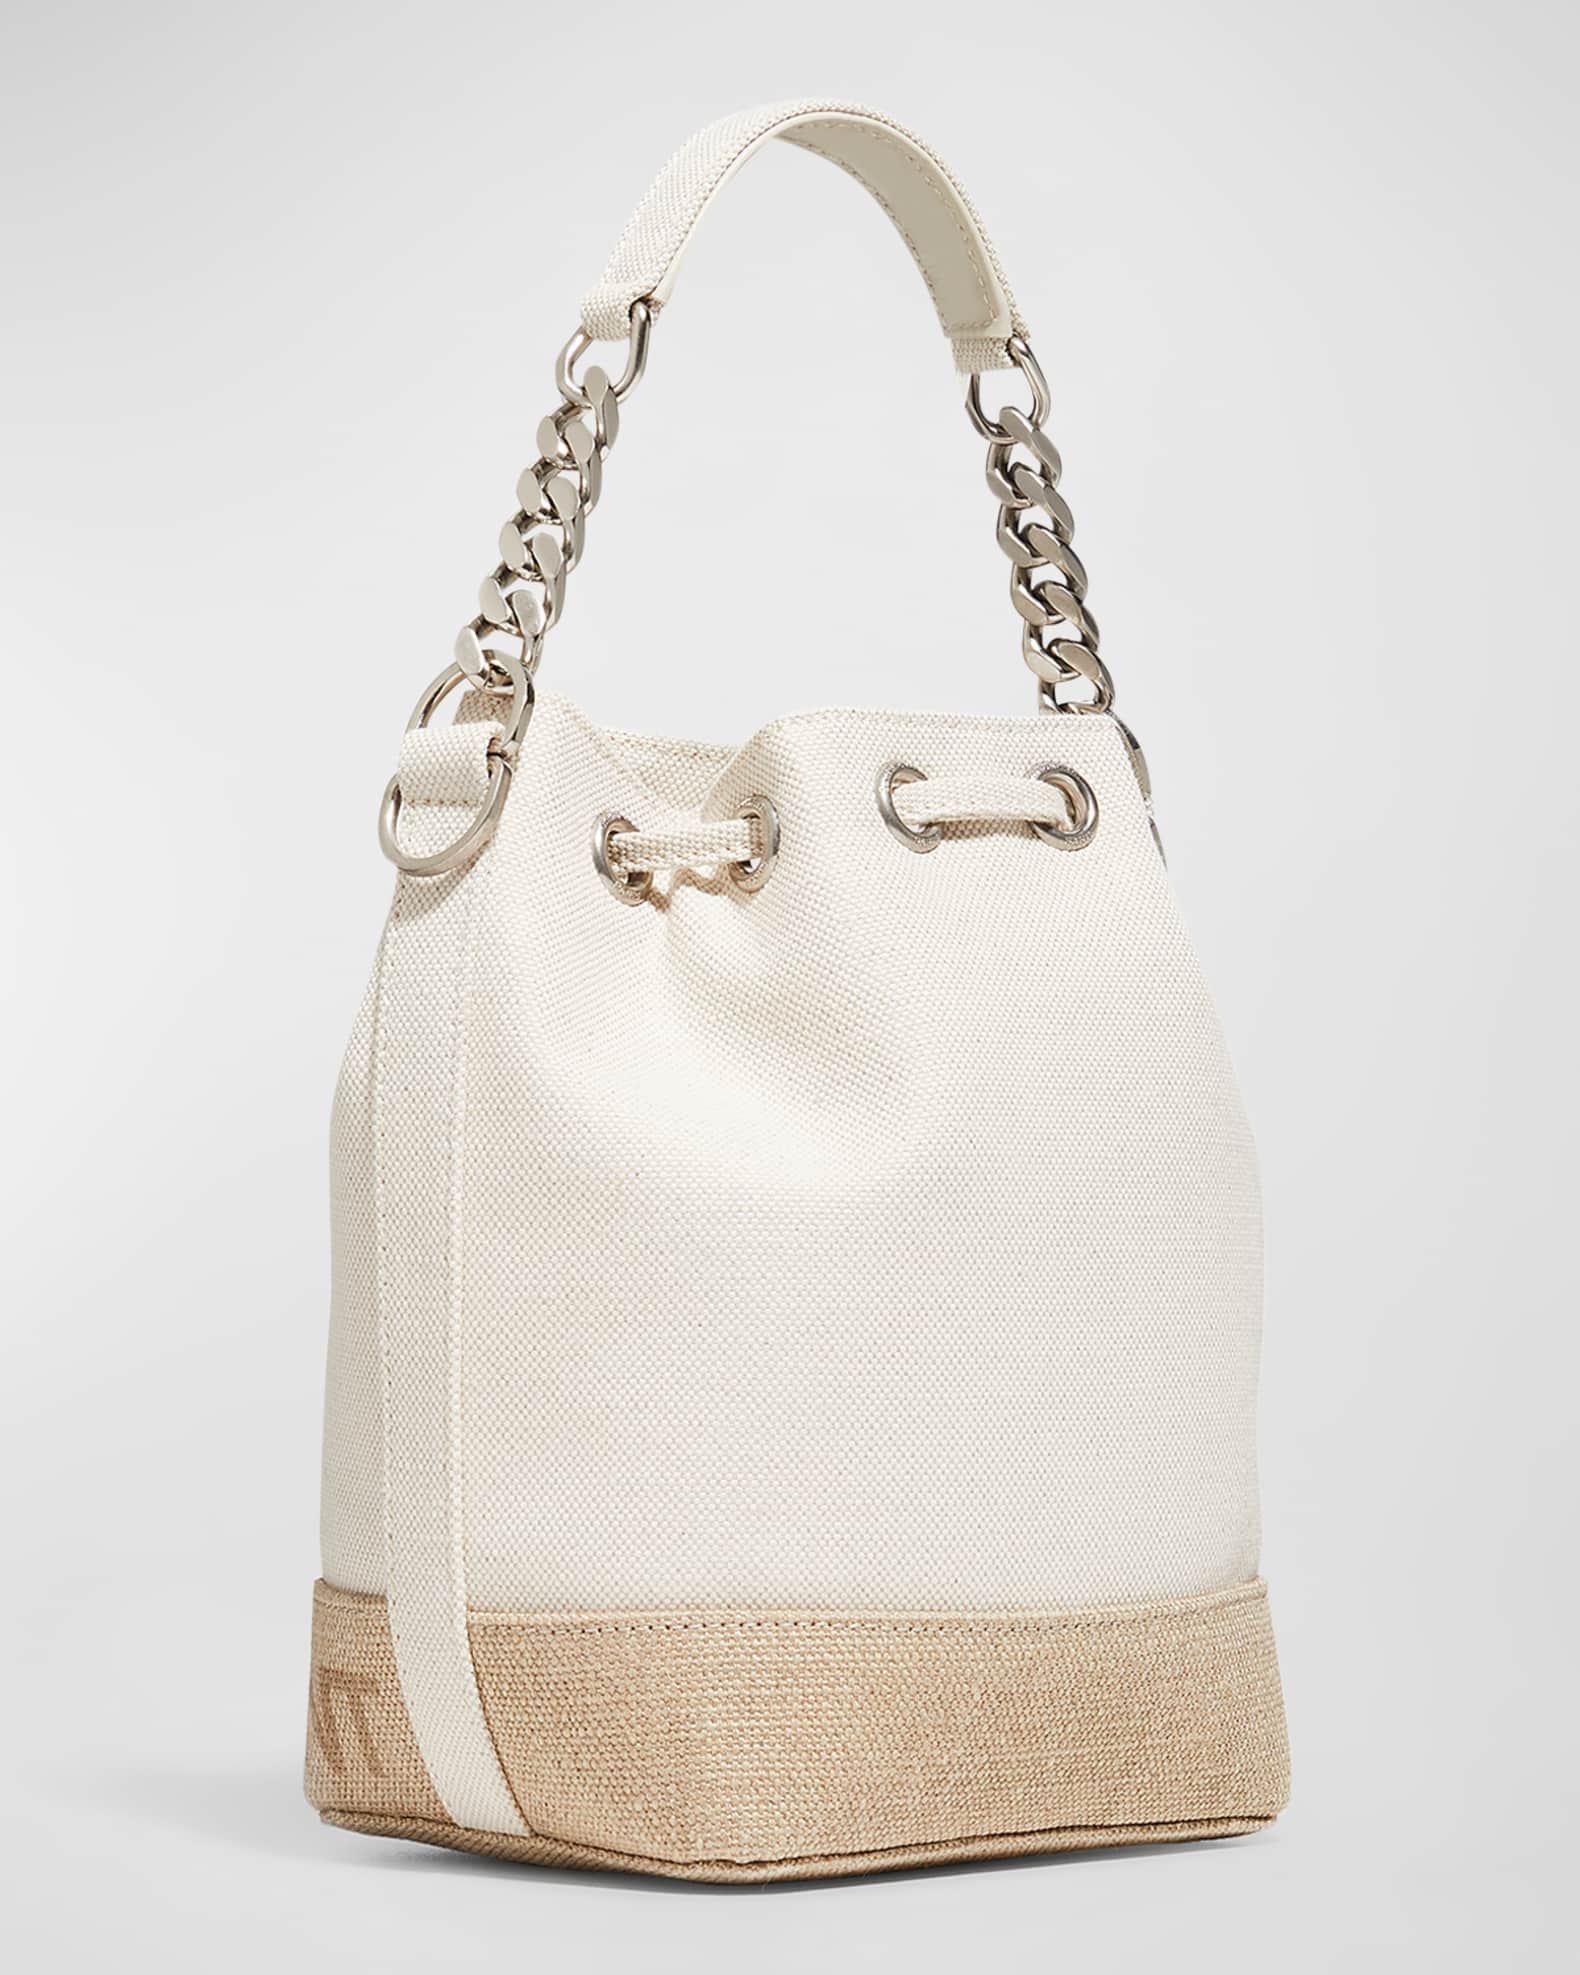 Saint Laurent Rive Gauche Small Bucket Bag in Canvas | Neiman Marcus